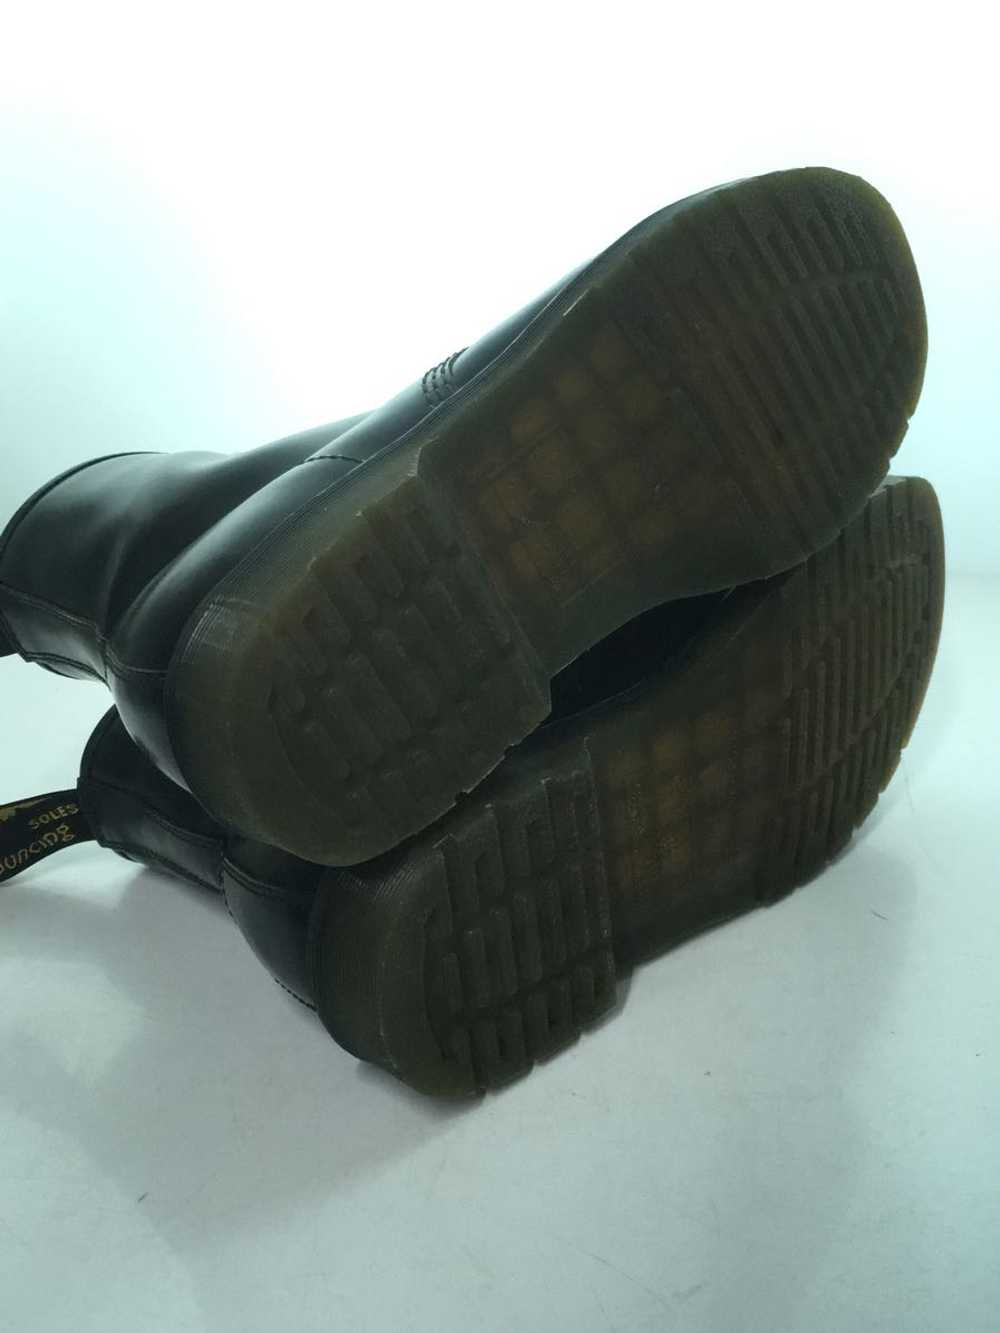 Dr.Martens Boots/Uk9/Blk/Leather/11822/Wrinkle Sh… - image 4